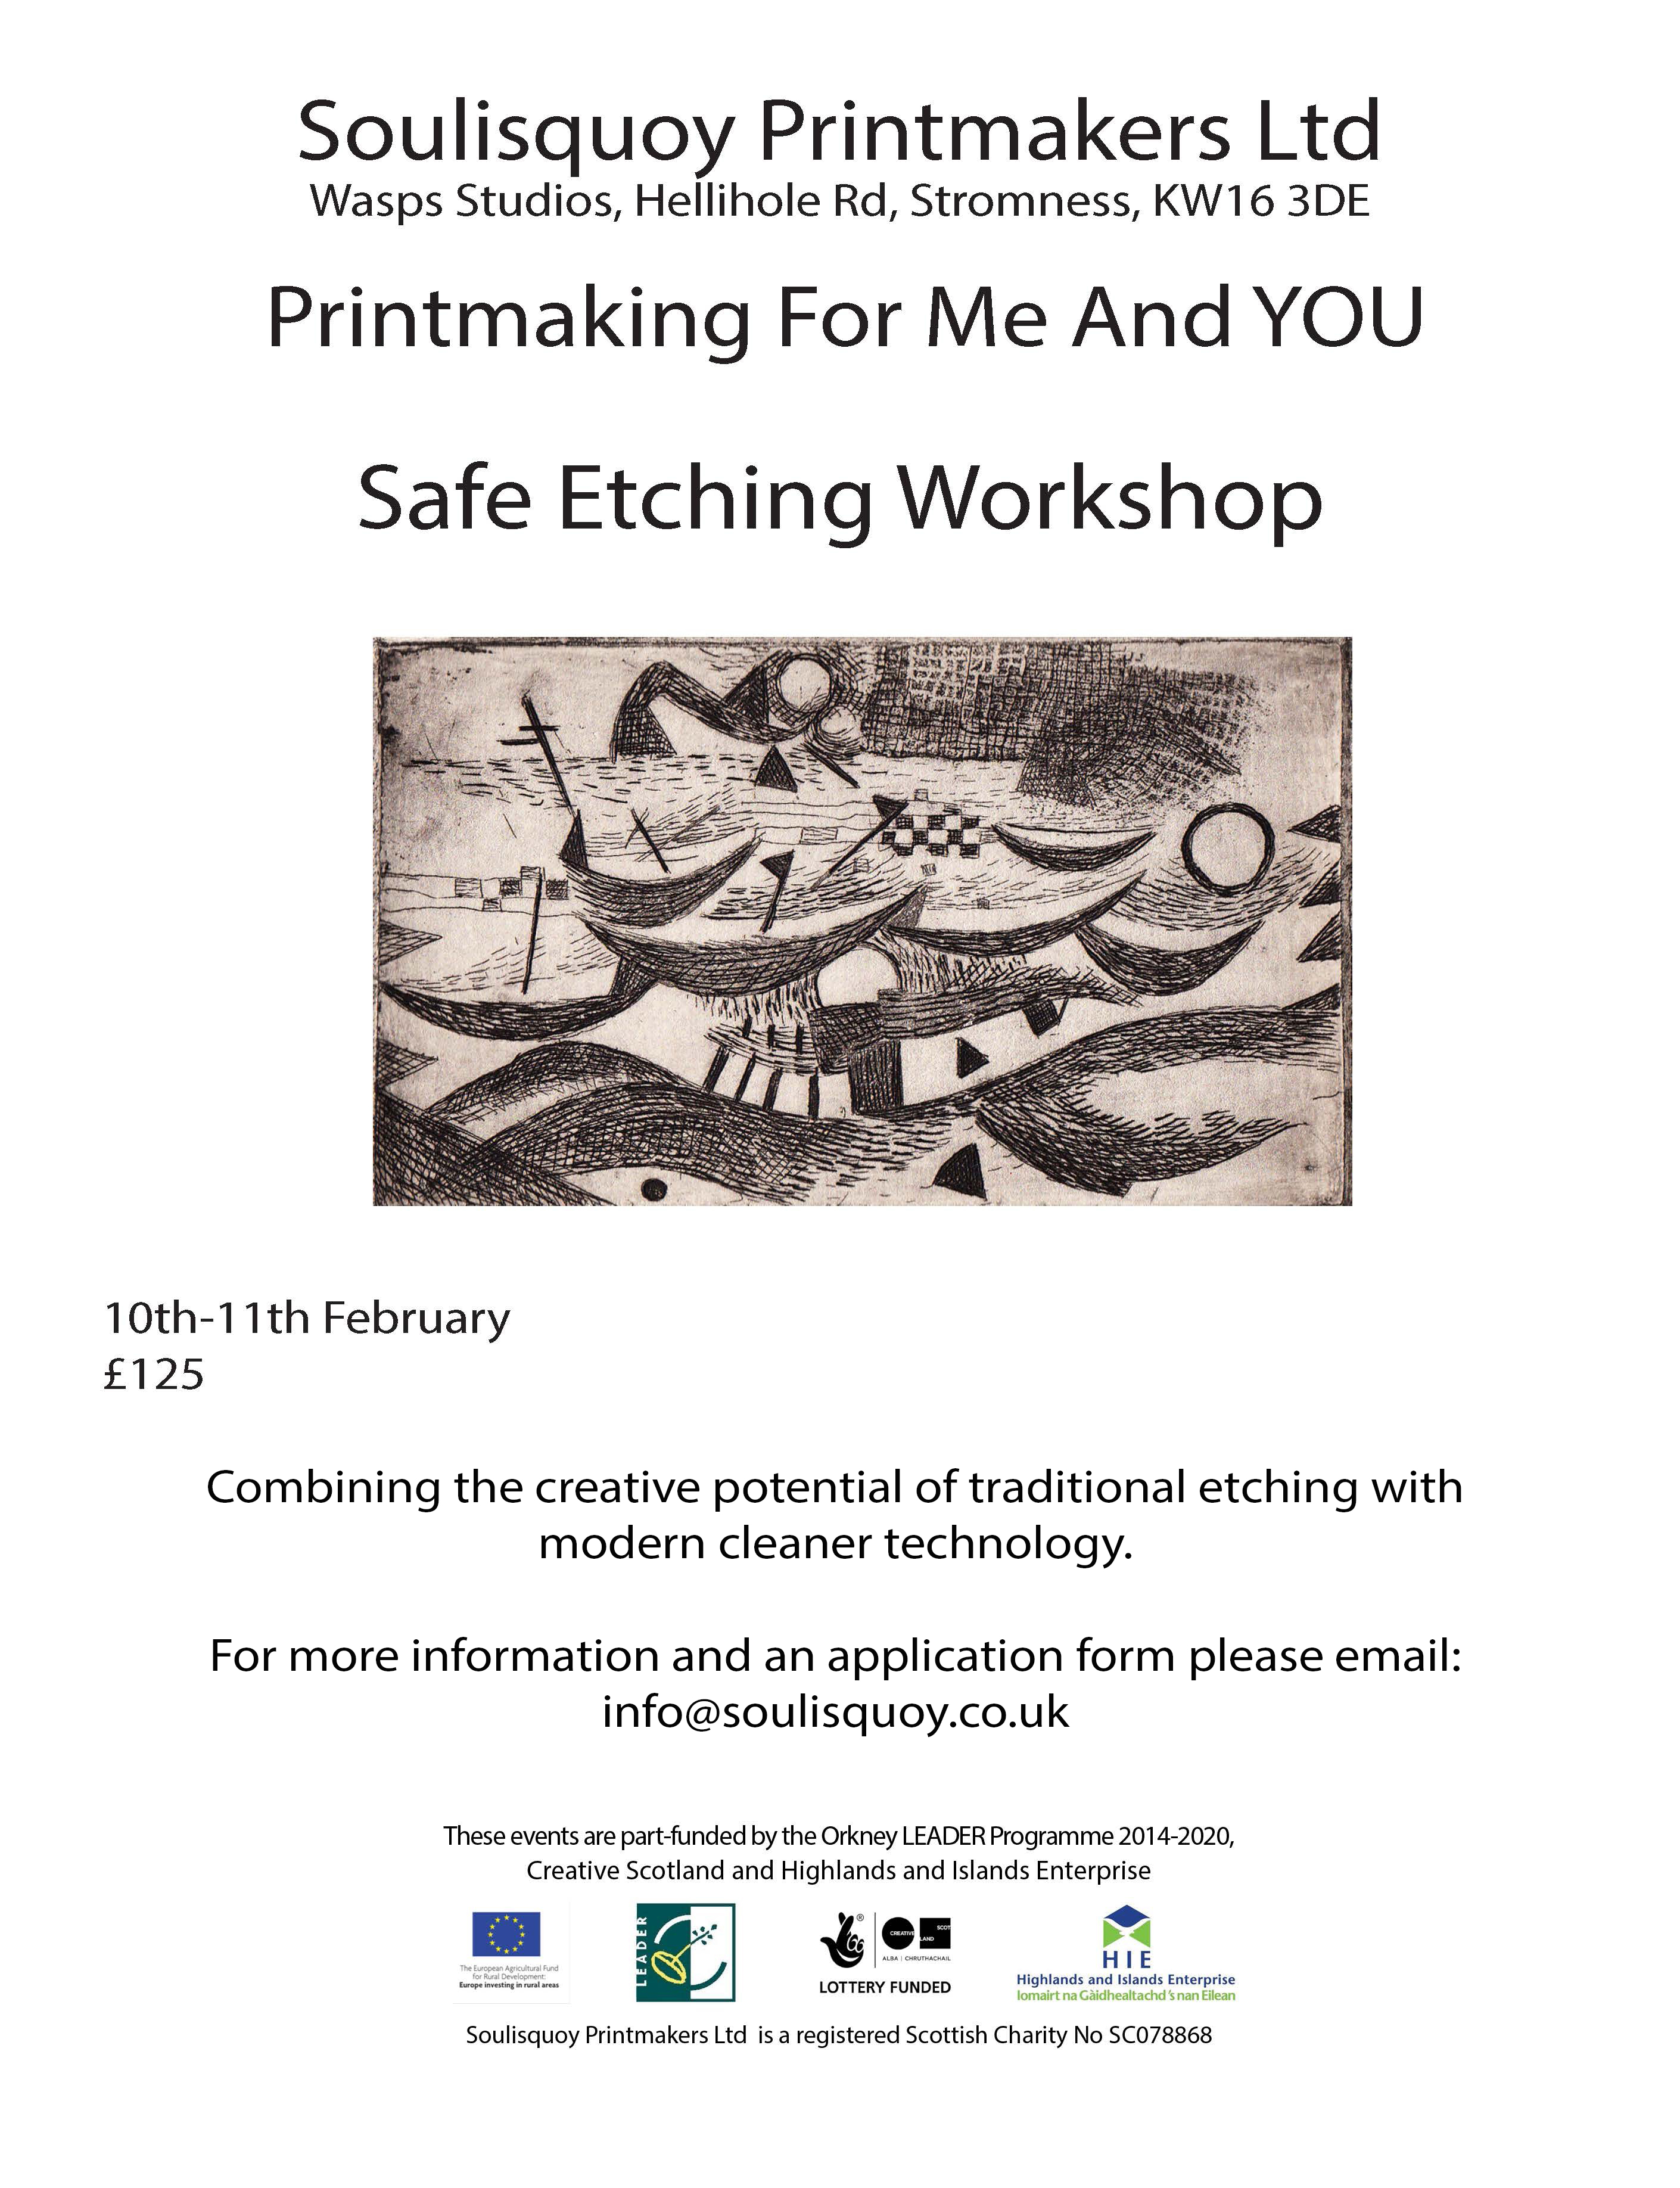 Safe Etching Workshop